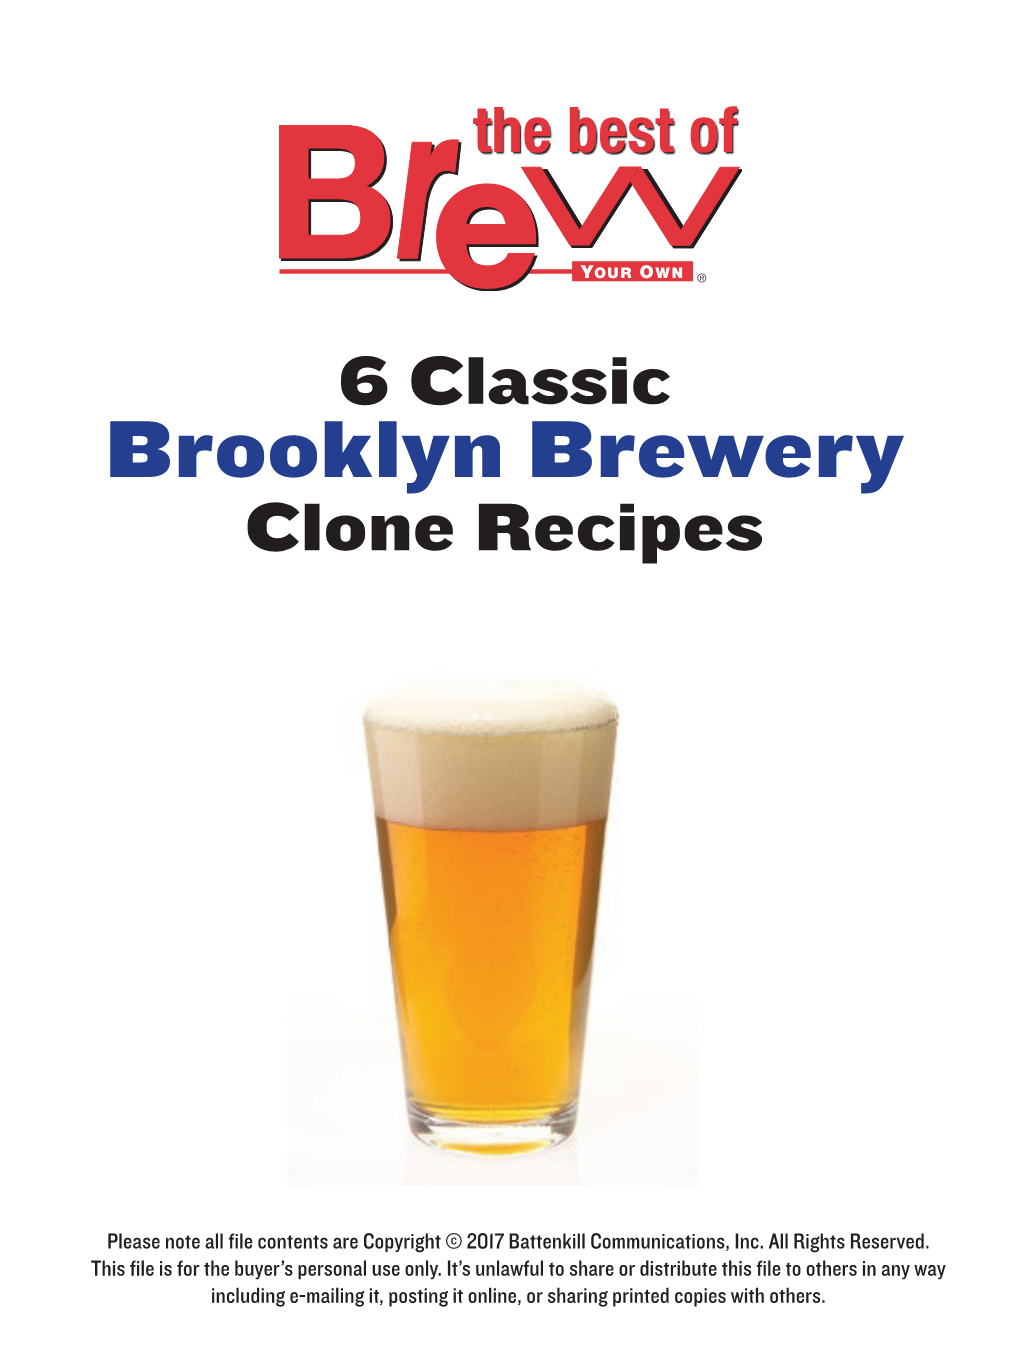 Brooklyn Brewery Clone Recipes